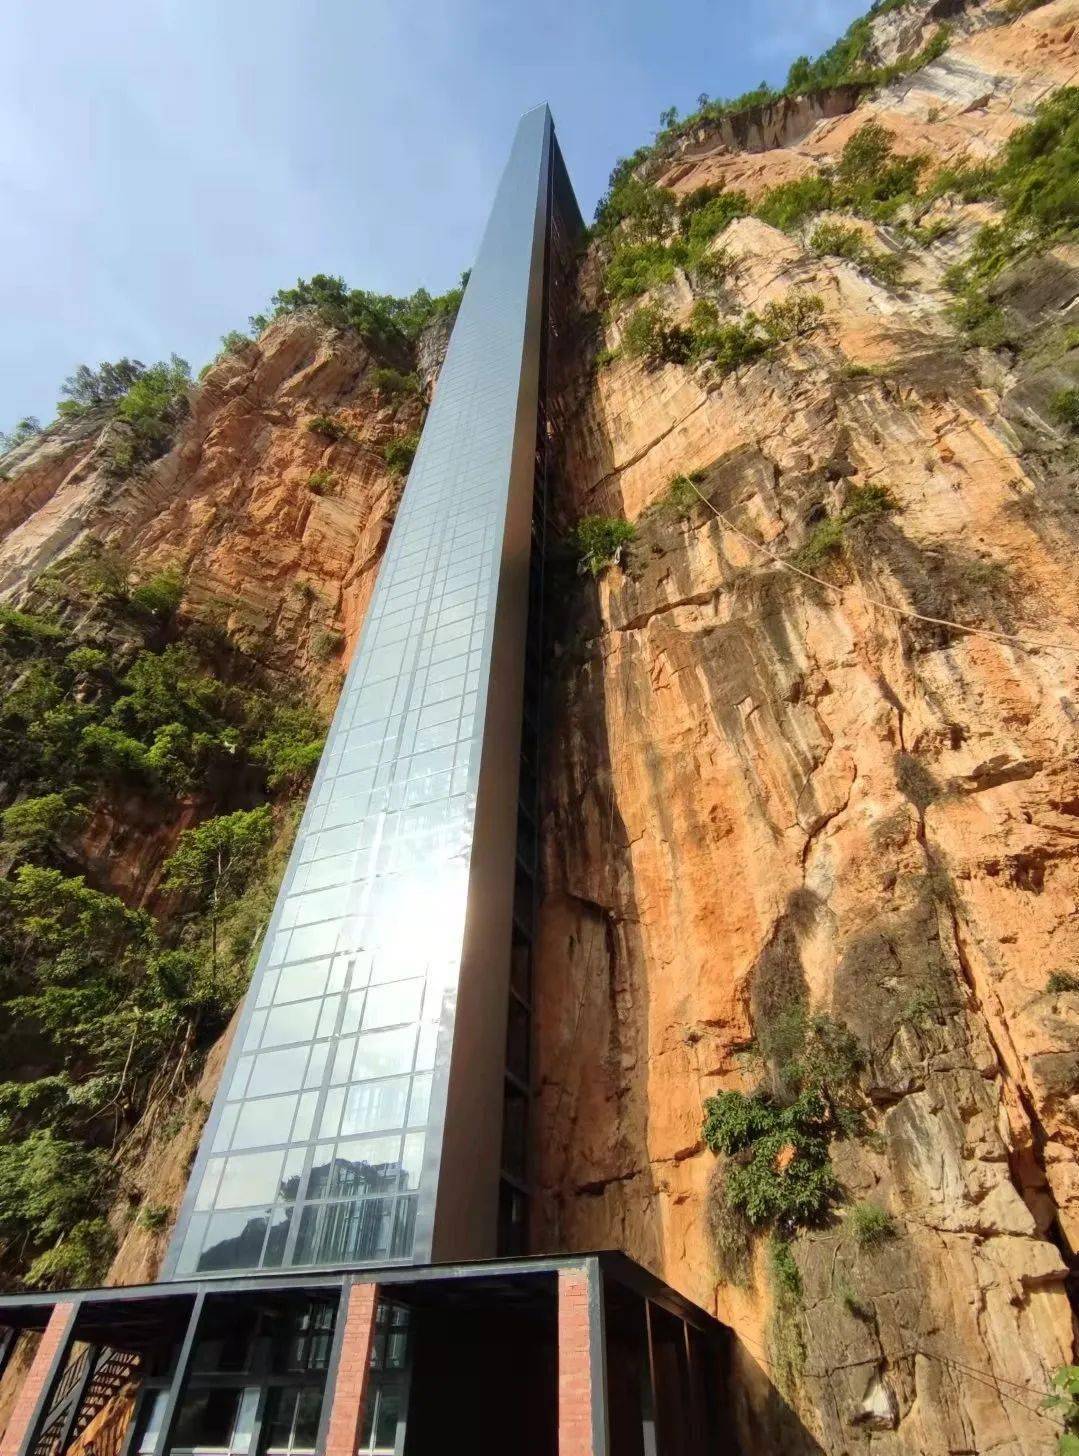 百龙观光电梯位于张家界景区内,运行高度326米,一半从山体内穿过,另